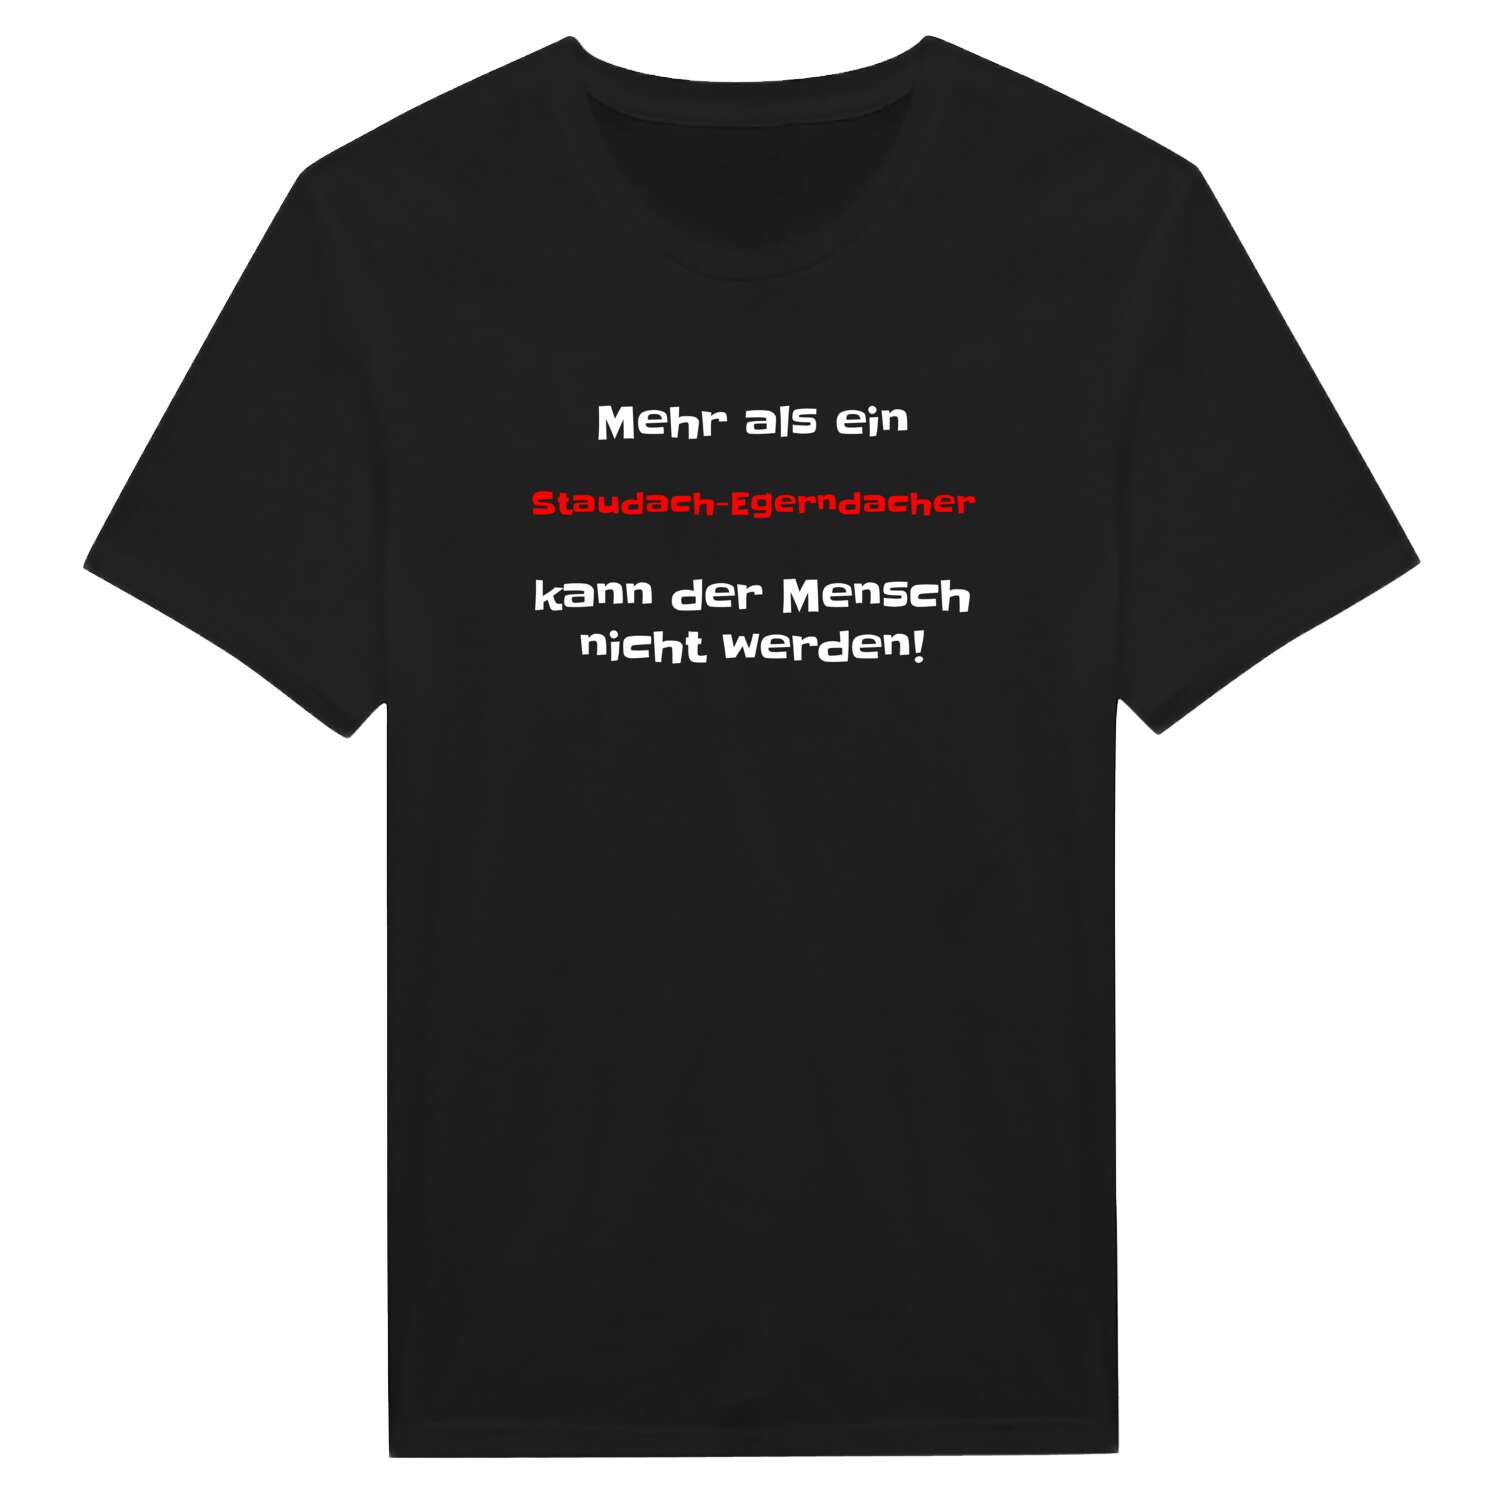 Staudach-Egerndach T-Shirt »Mehr als ein«